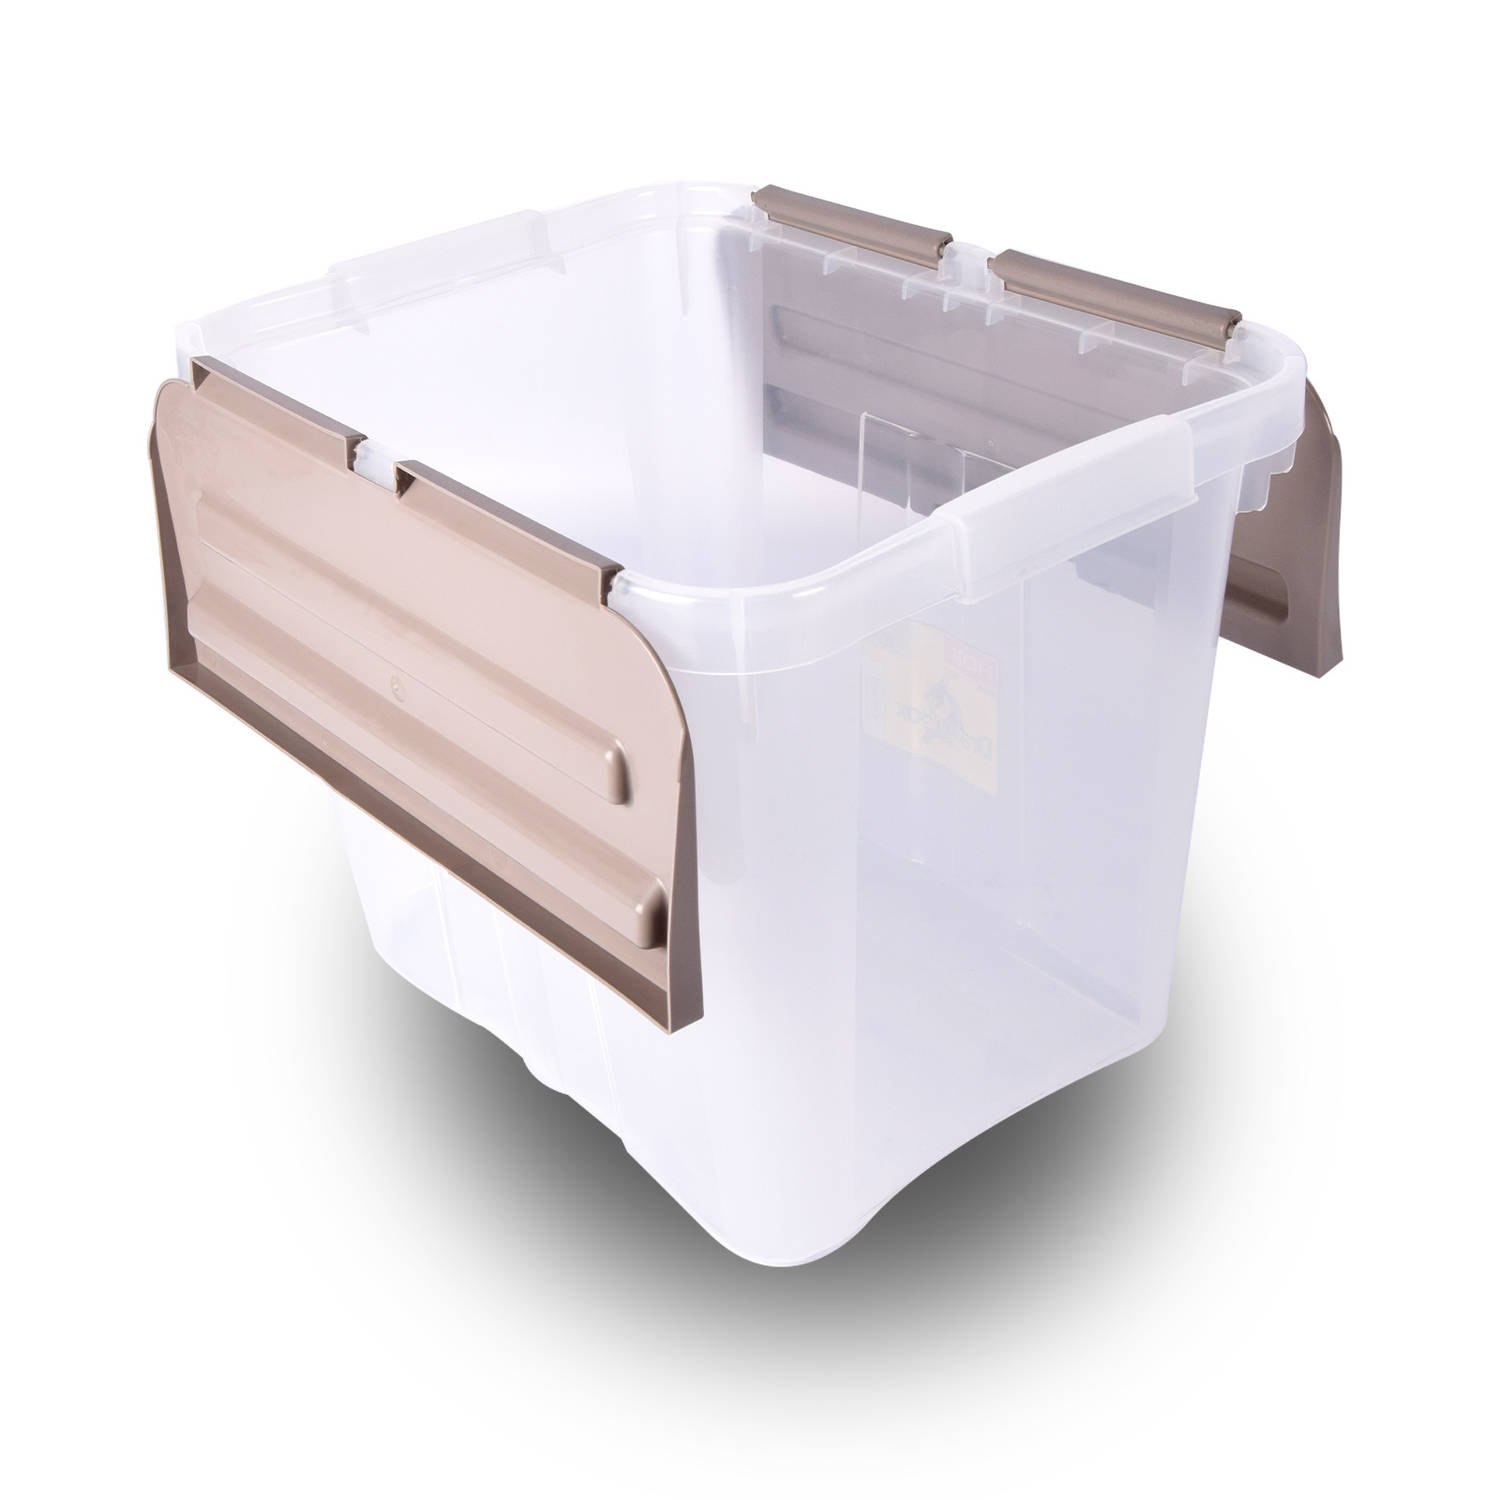 Multifunctionele Grijze Opbergbox 24L | Waterdicht, Stapelbaar met Klapdeksel | Ideaal voor Huishouden, Slaapkamer en Klussen Organisatie